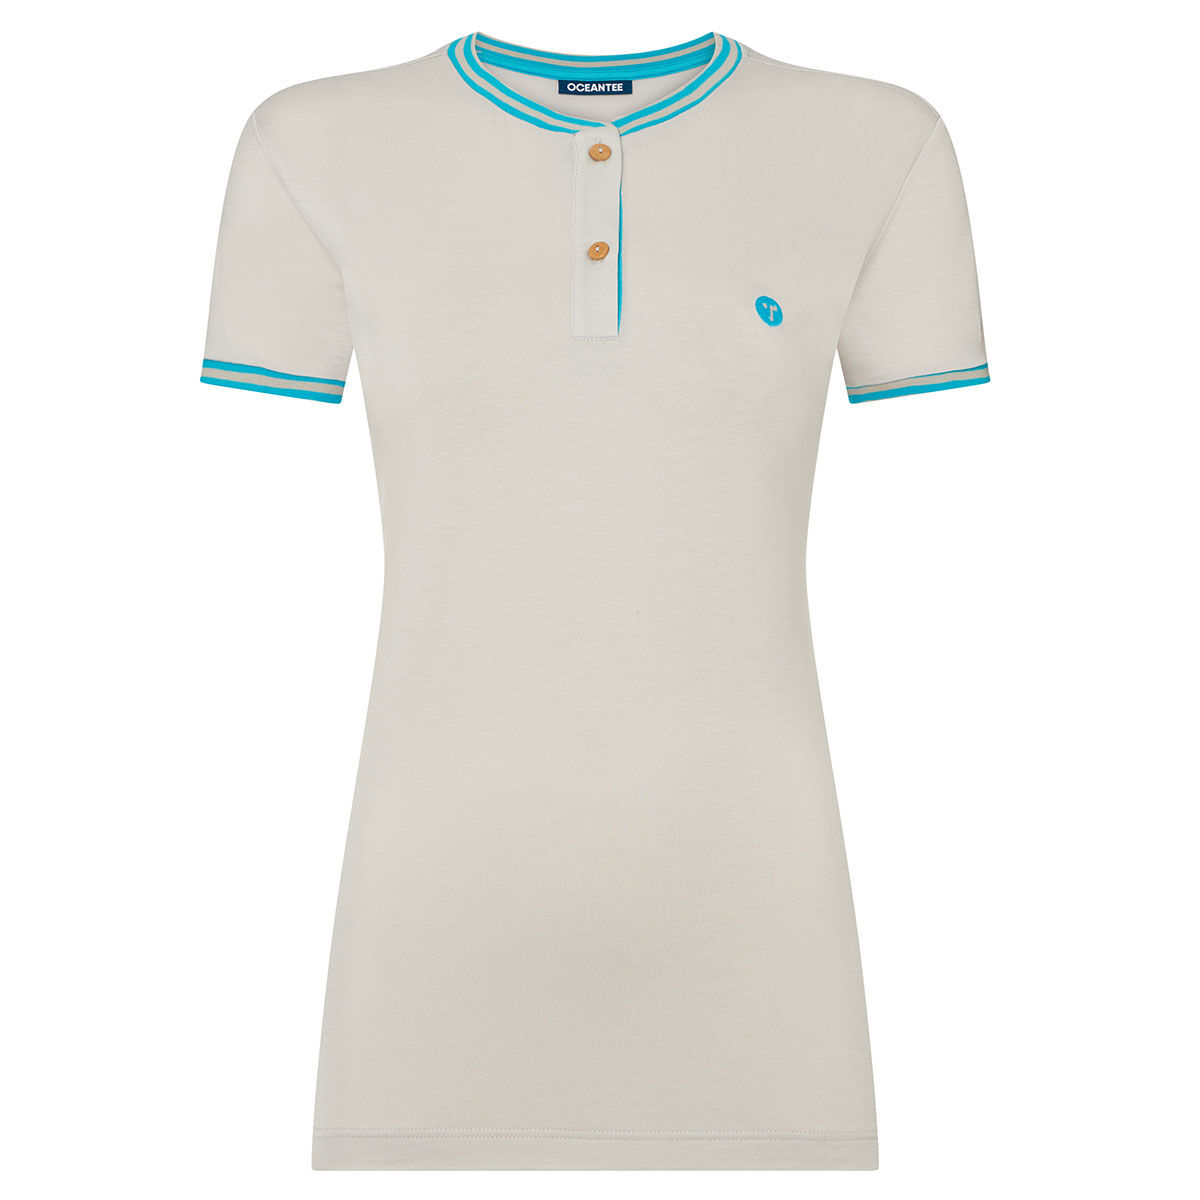 Ocean Tee Womens Light Grey Lightweight Oceanic Golf Polo Shirt, Size: Medium | American Golf von Ocean Tee